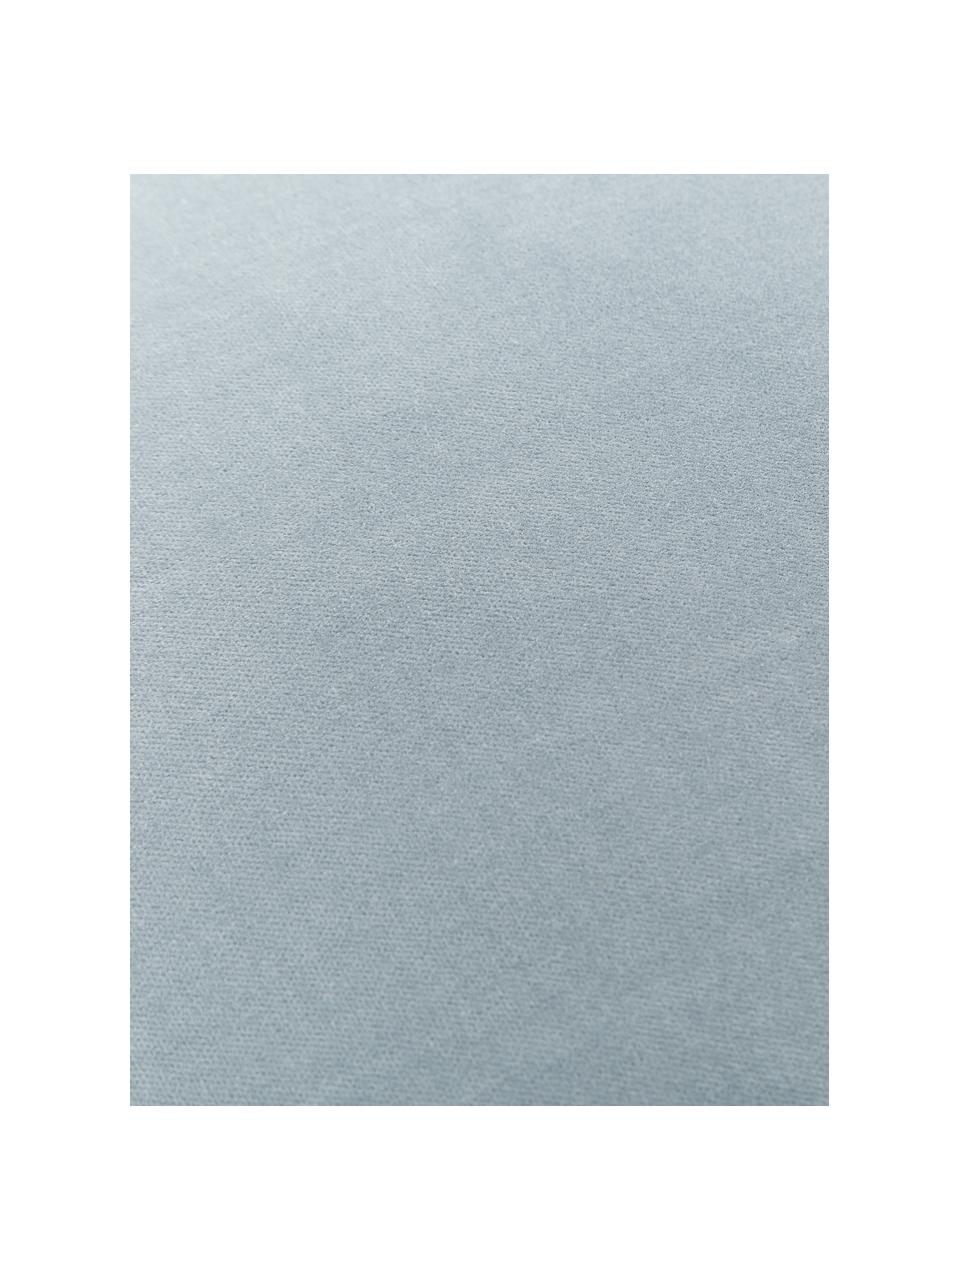 Housse de coussin velours bleu clair Dana, 100 % velours de coton, Bleu ciel, larg. 50 x long. 50 cm